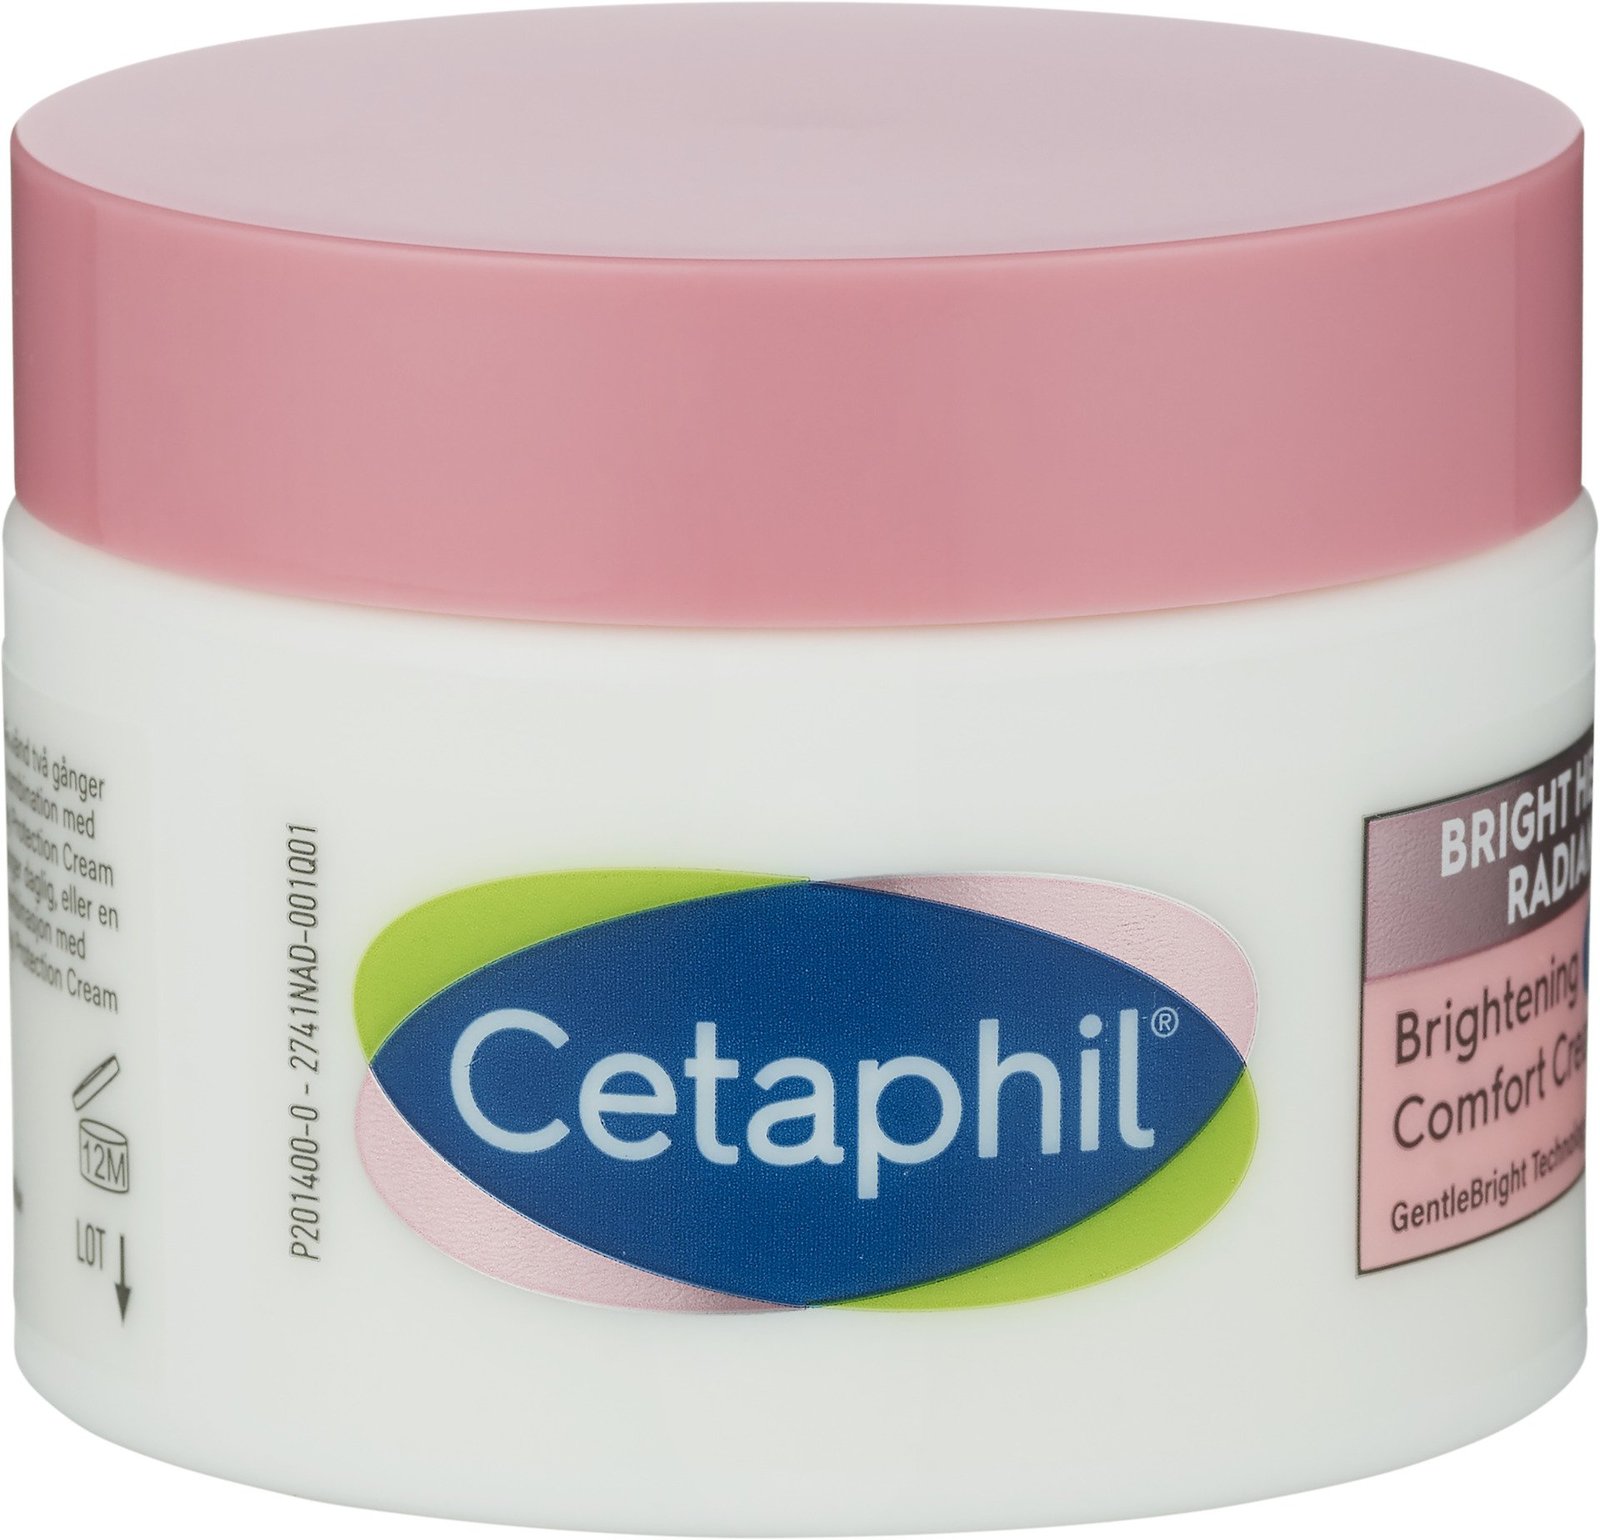 Cetaphil Brightening Night Comfort Cream 50 ml